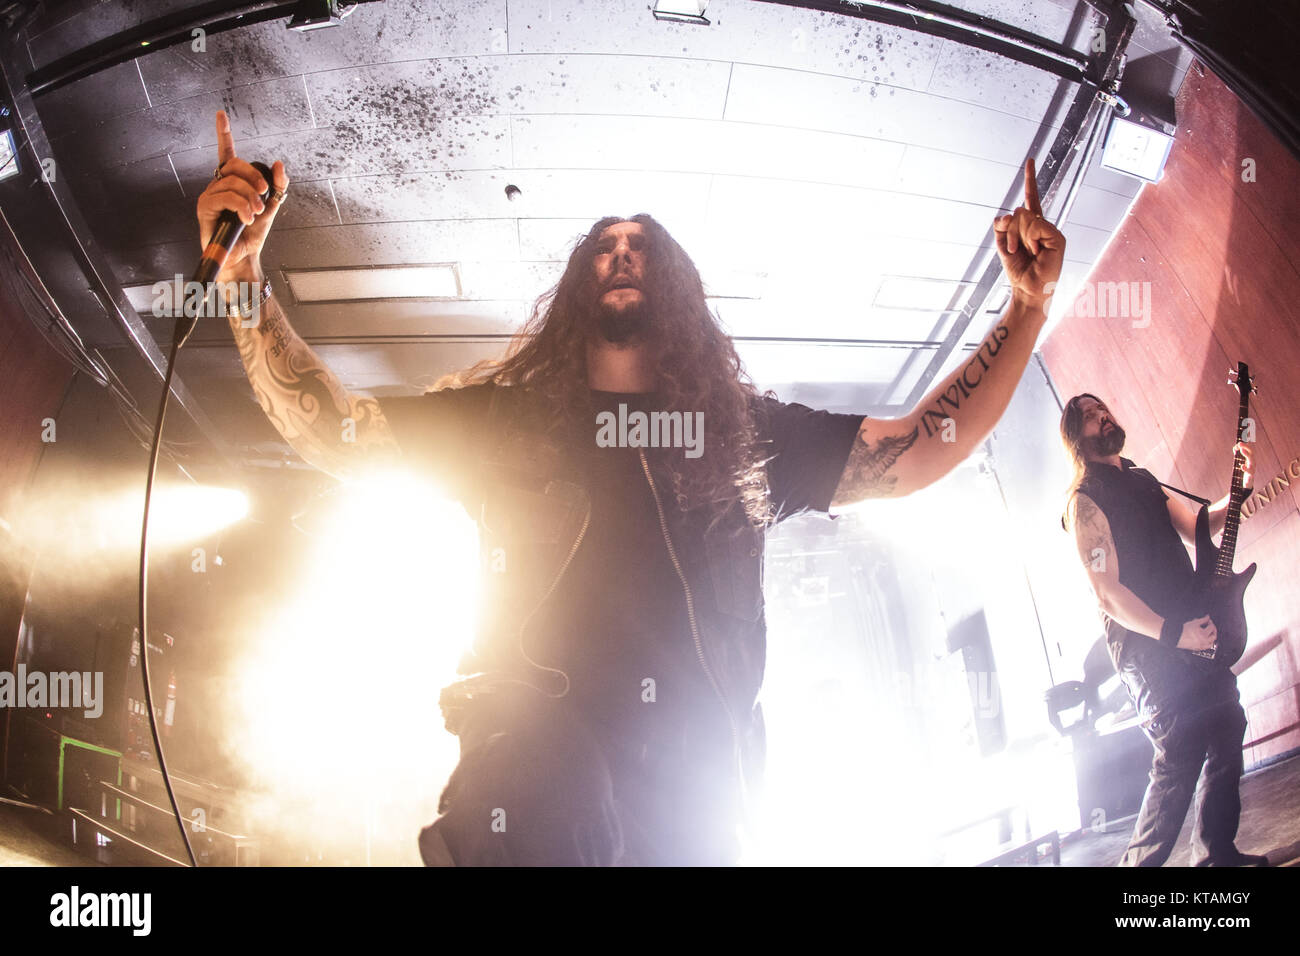 Le groupe de metal extrême canadien Kataklysm effectue un concert live à Vega à Copenhague. Ici le chanteur Maurizio Iacono est vu sur scène. Le Danemark, 11/01 2016. Banque D'Images